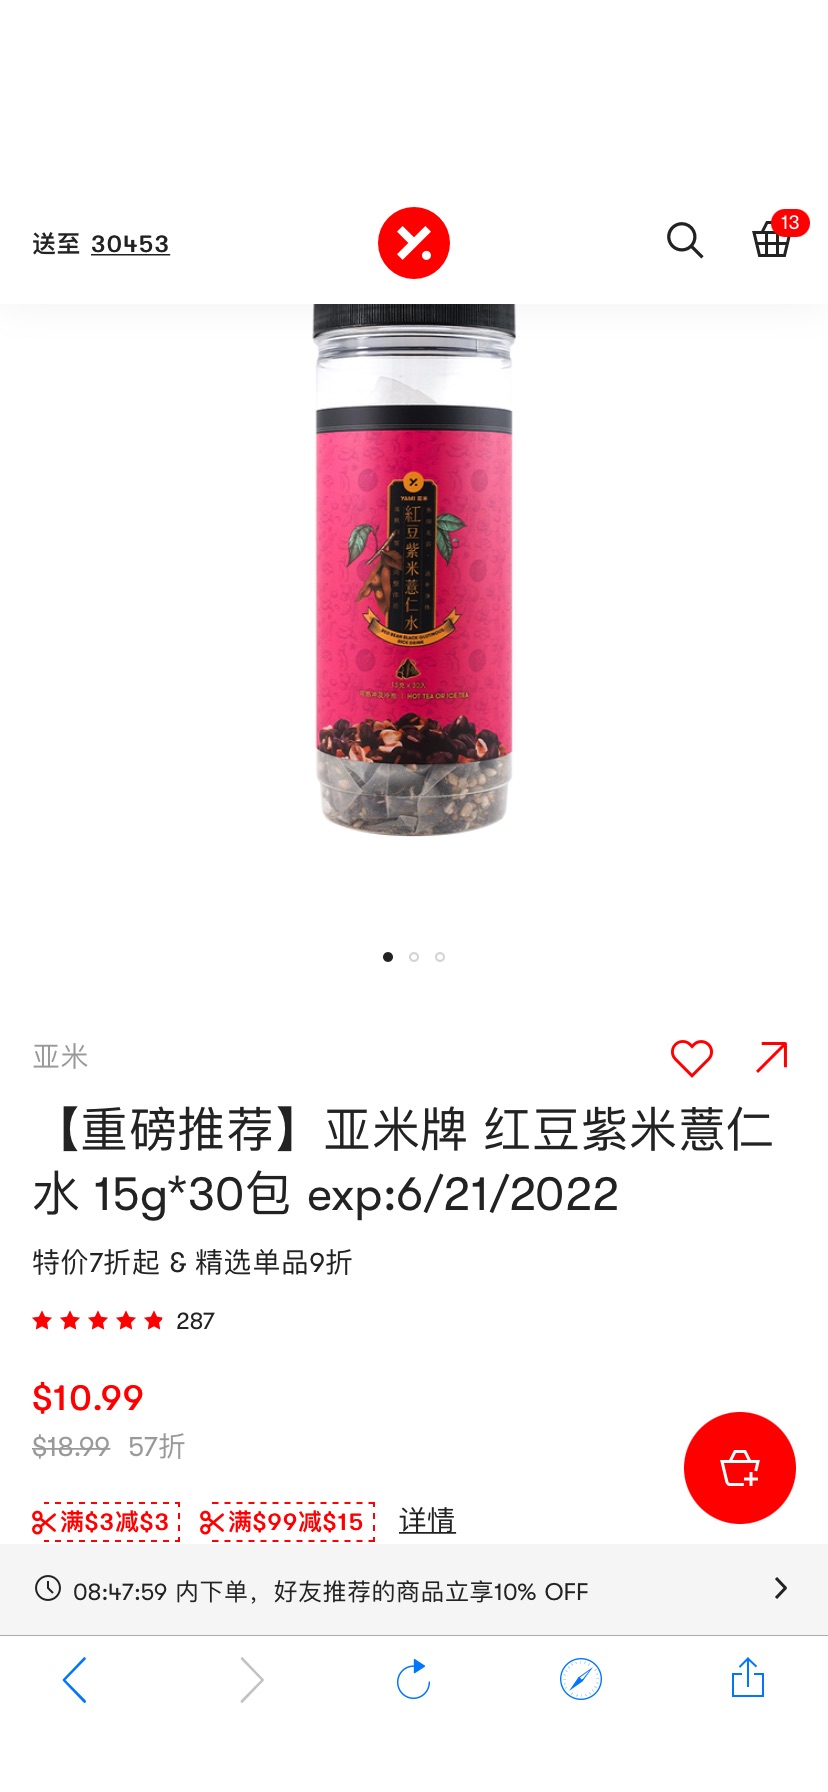 【重磅推荐】亚米牌 红豆紫米薏仁水 15g*30包 exp:6/21/2022 - 亚米